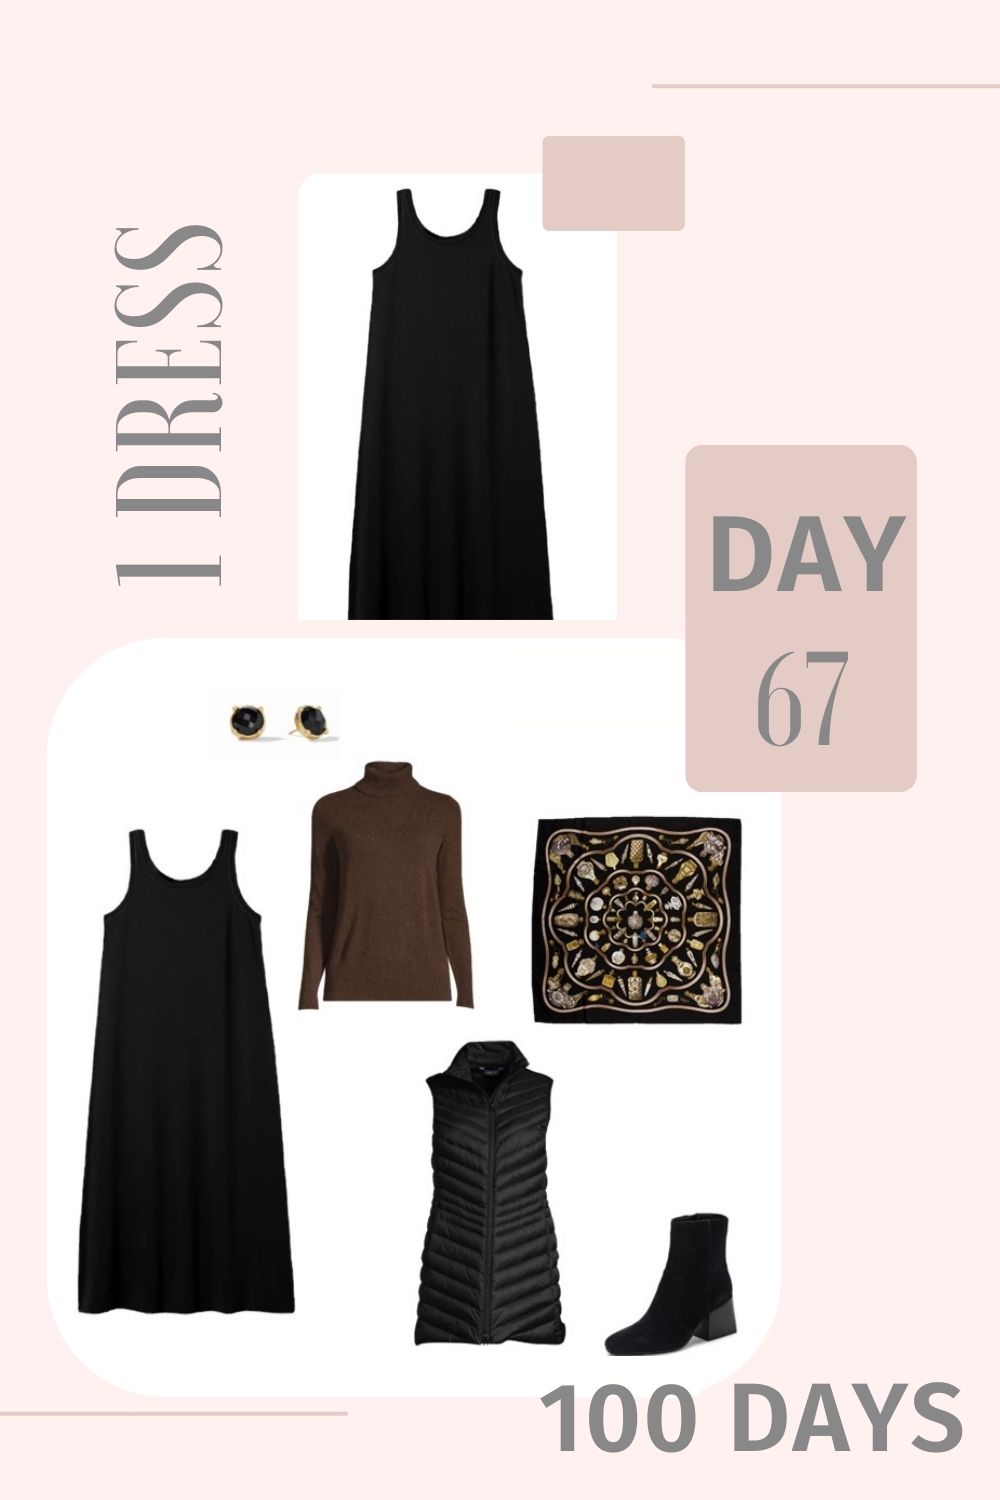 1 Dress 100 Days - Day 67